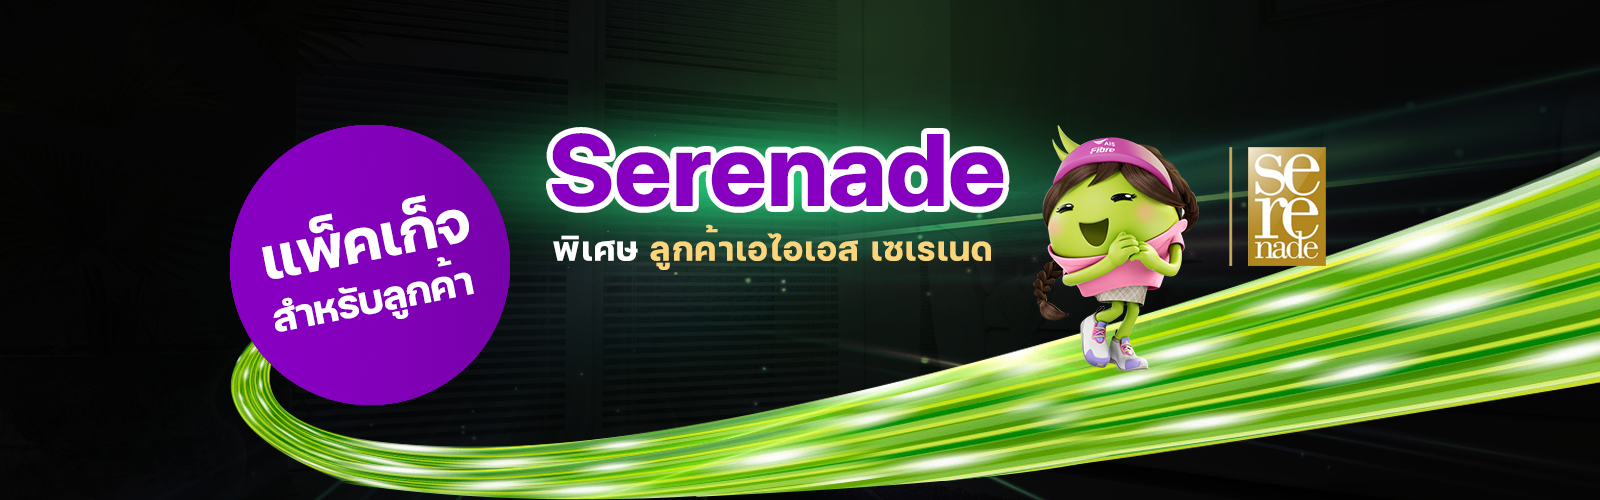 ais_serenade1